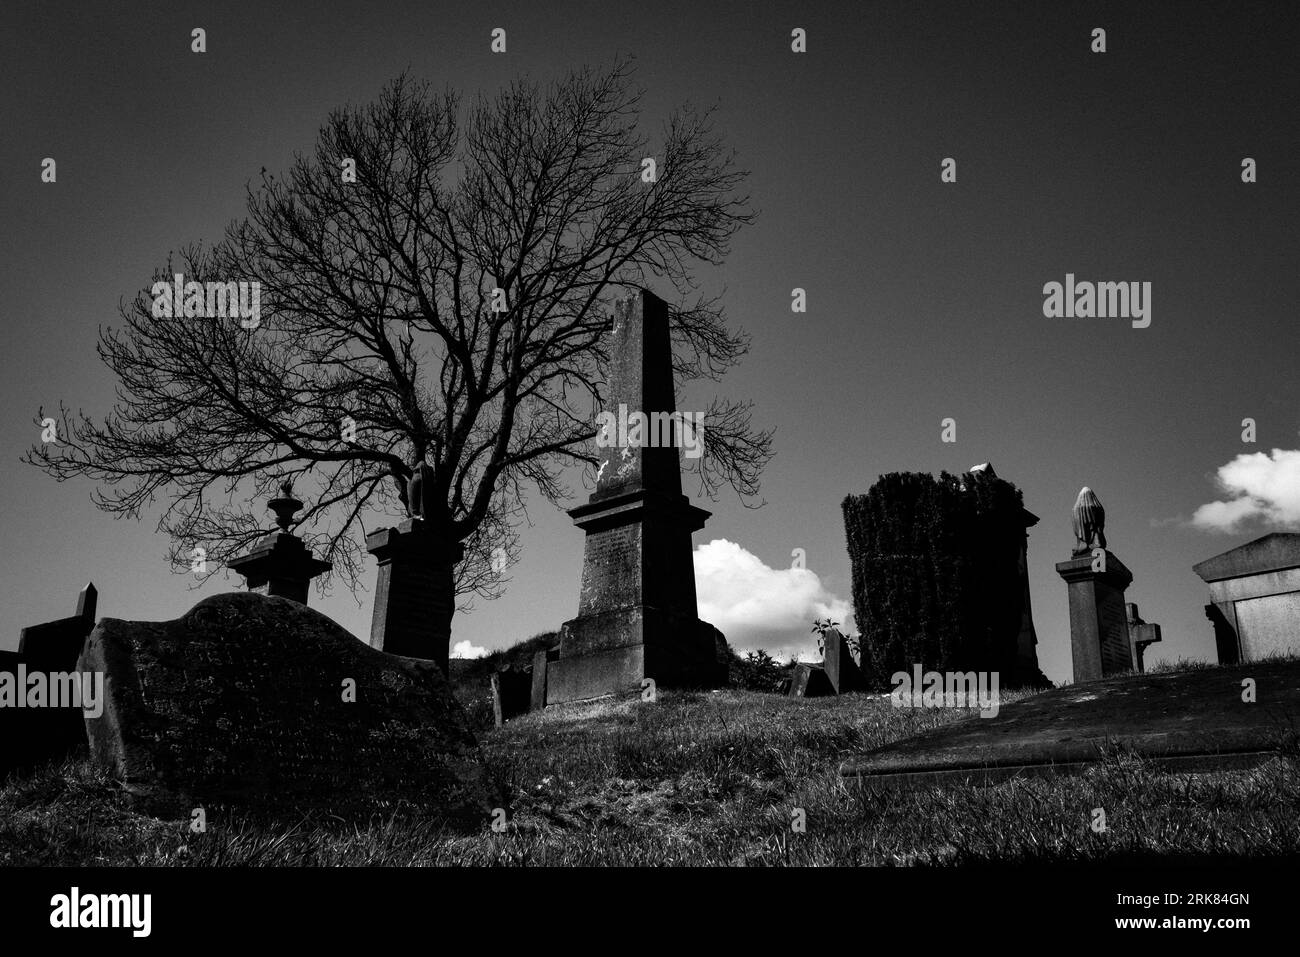 Une scène automnale mettant en scène un cimetière recouvert de feuillage saisonnier Banque D'Images